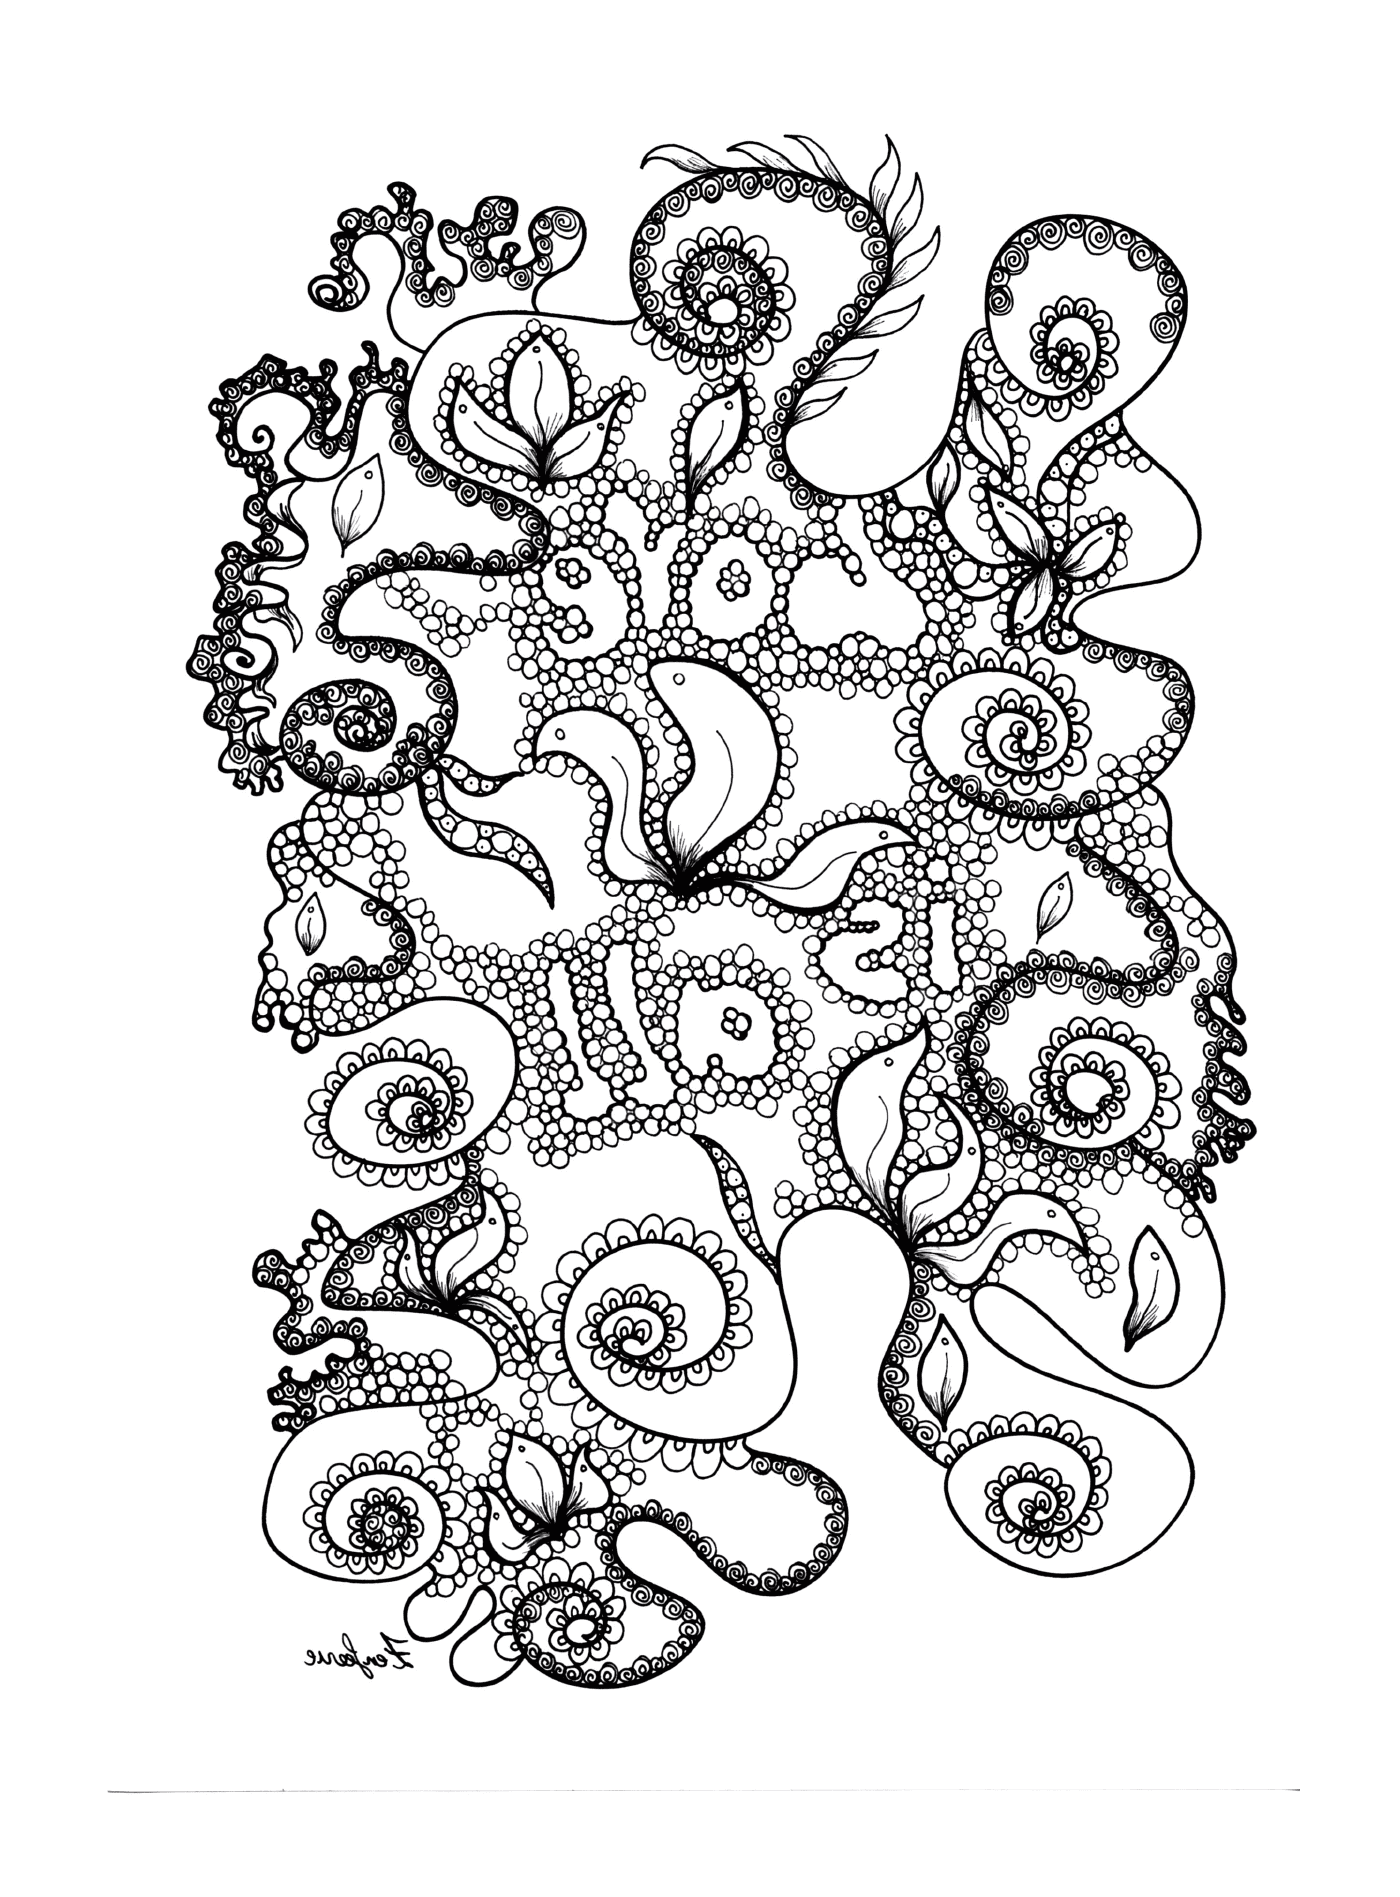  Criatura marina con tentáculos 